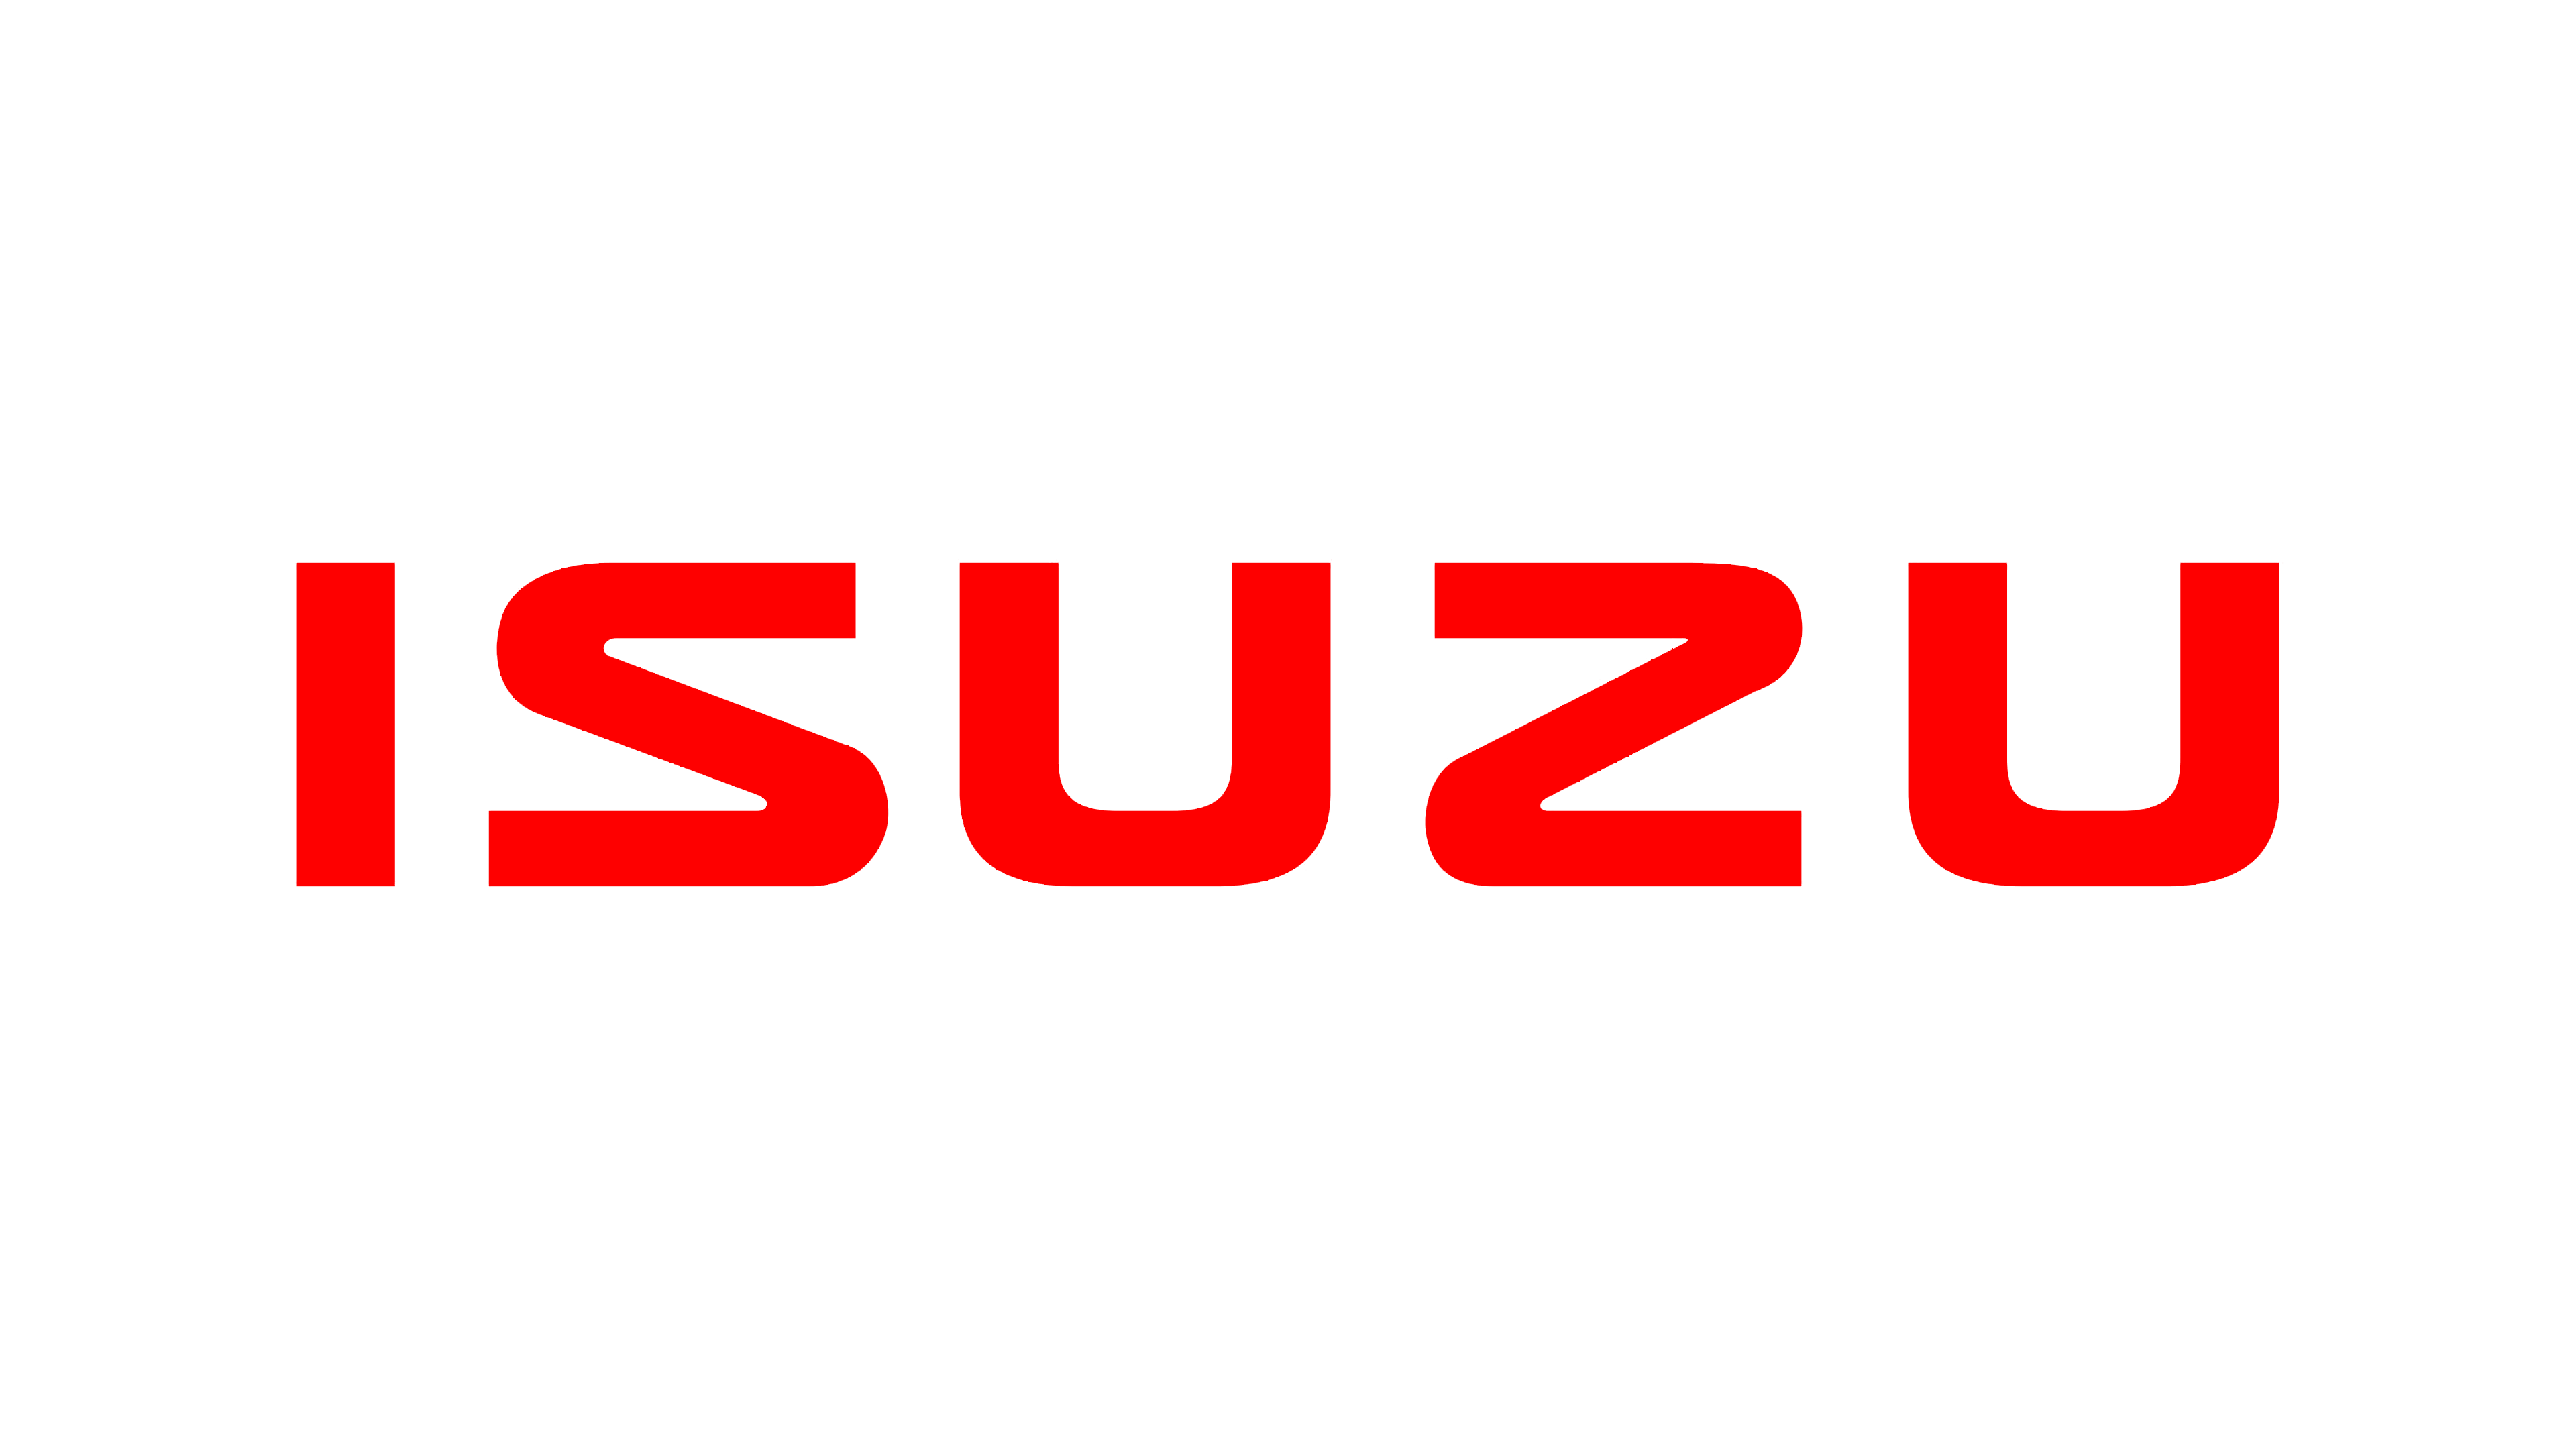 7,166 Isuzu Motors Images, Stock Photos & Vectors | Shutterstock